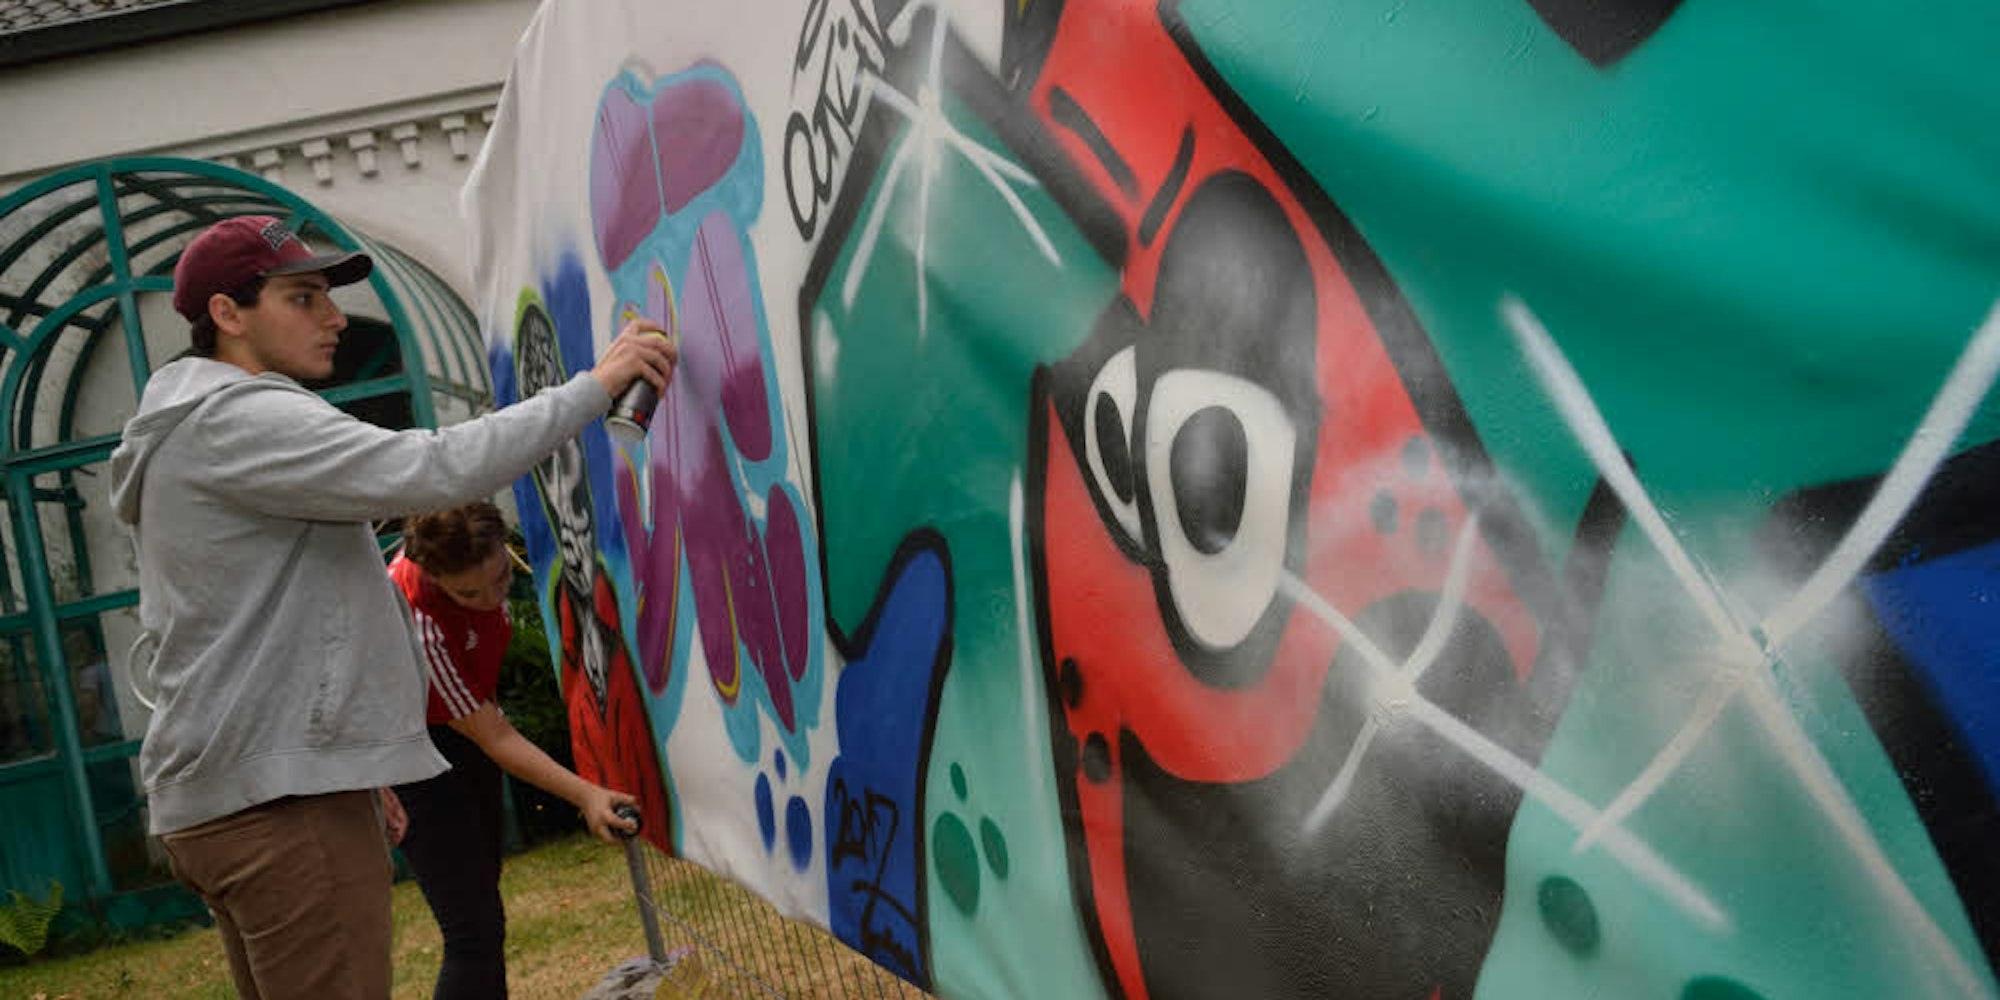 Das Sprühen von Graffiti kann Kunst sein, wie bei der Blockparty in der Refrather Krea gezeigt wurde.